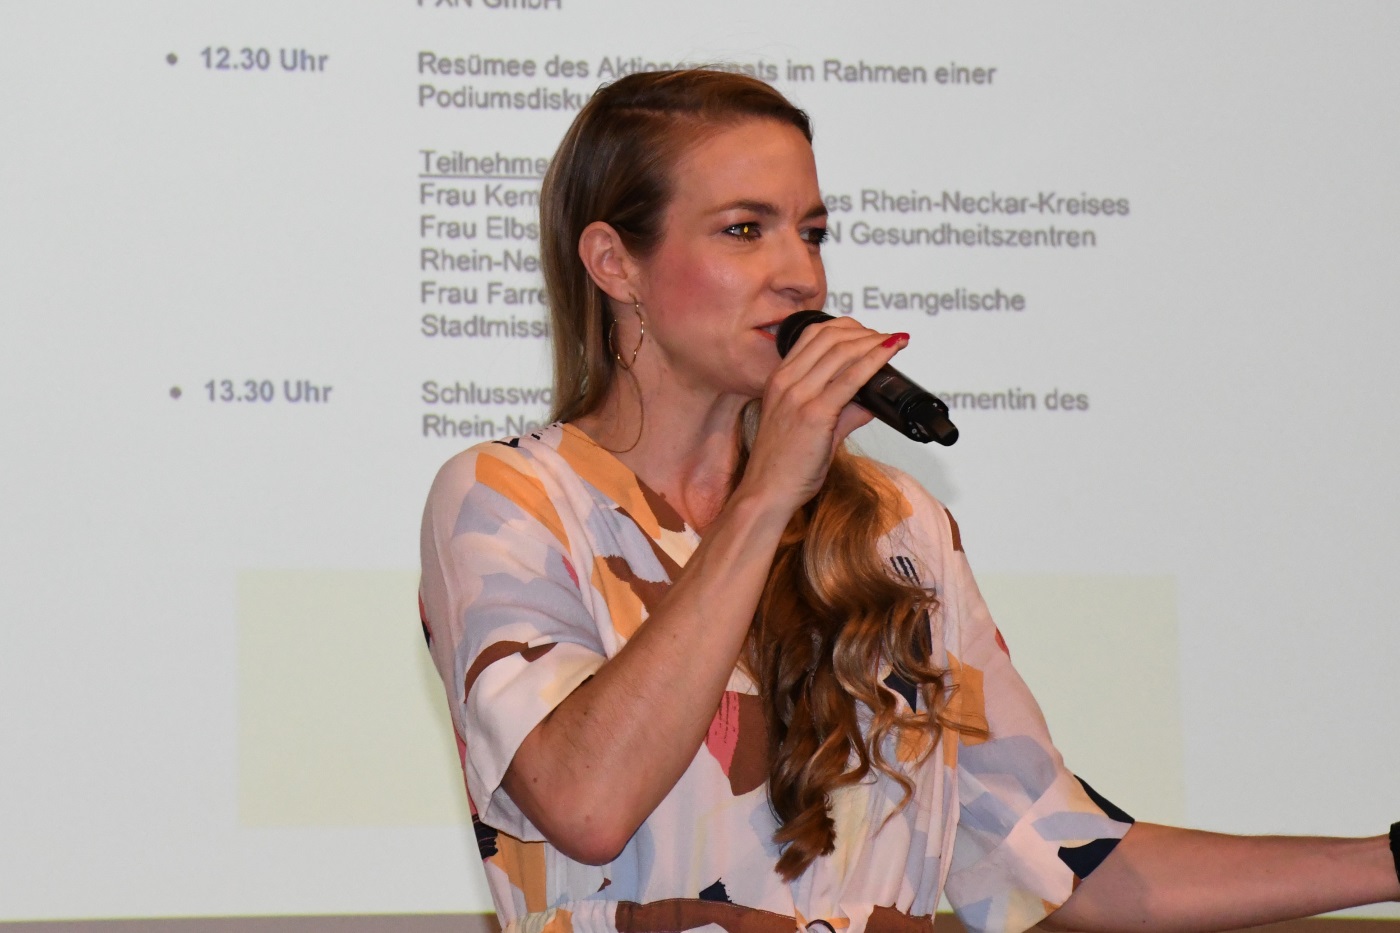 Abschlussveranstaltung der Kampagne Soziale Berufe / Berufe mit Herz vom Rhein-Neckar-Kreis im Palatin Wiesloch, Moderatorin Janina Klabes